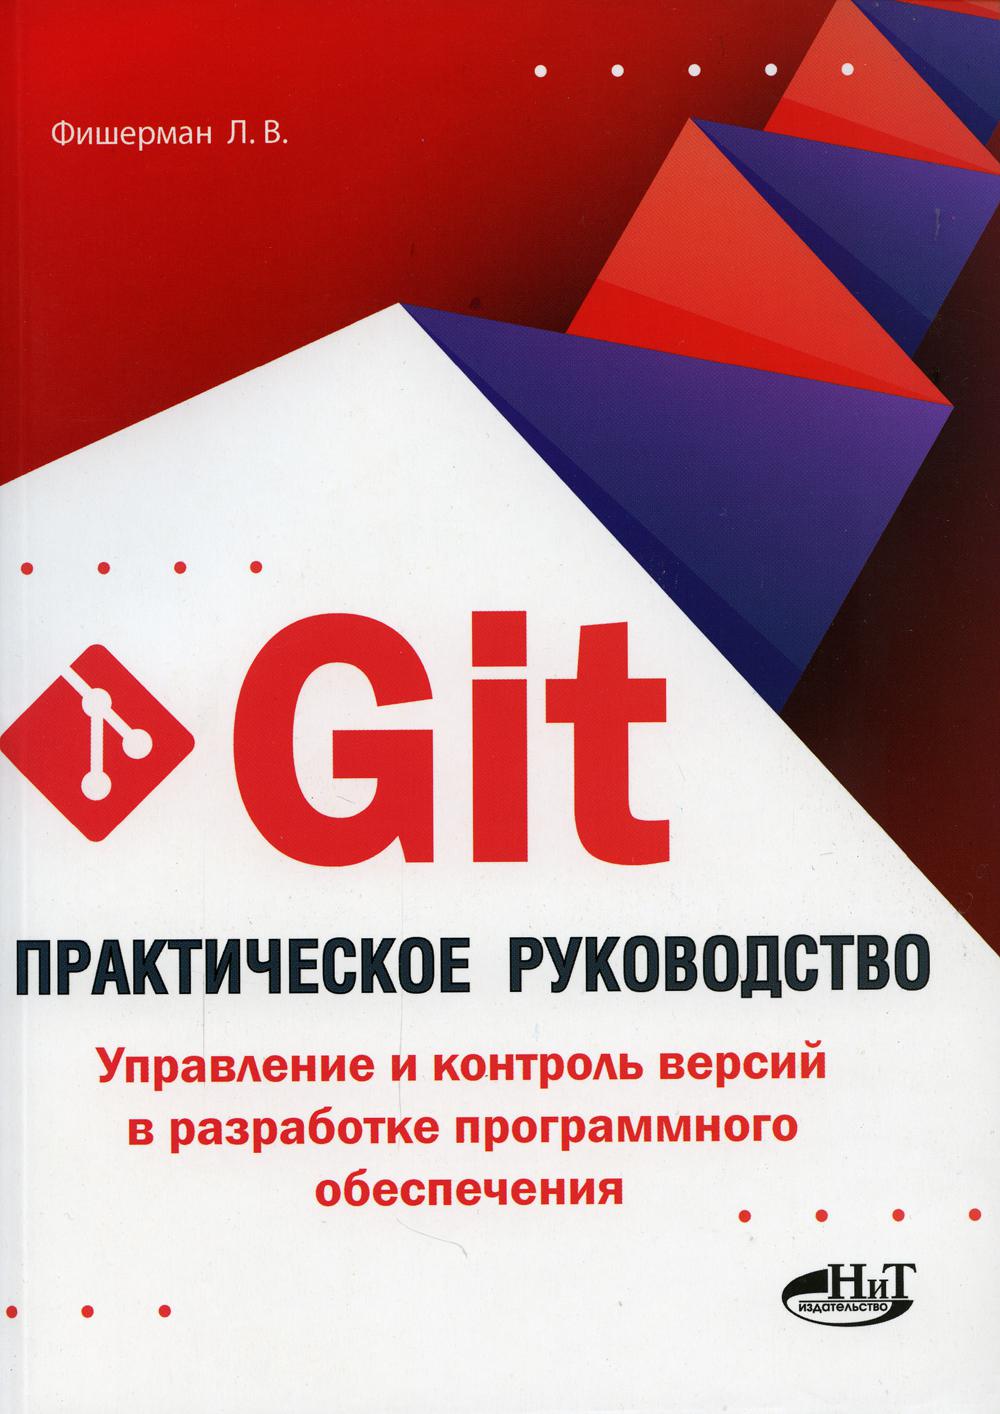 фото Книга git. управление и контроль версий в разработке программного обеспечения наука и техника